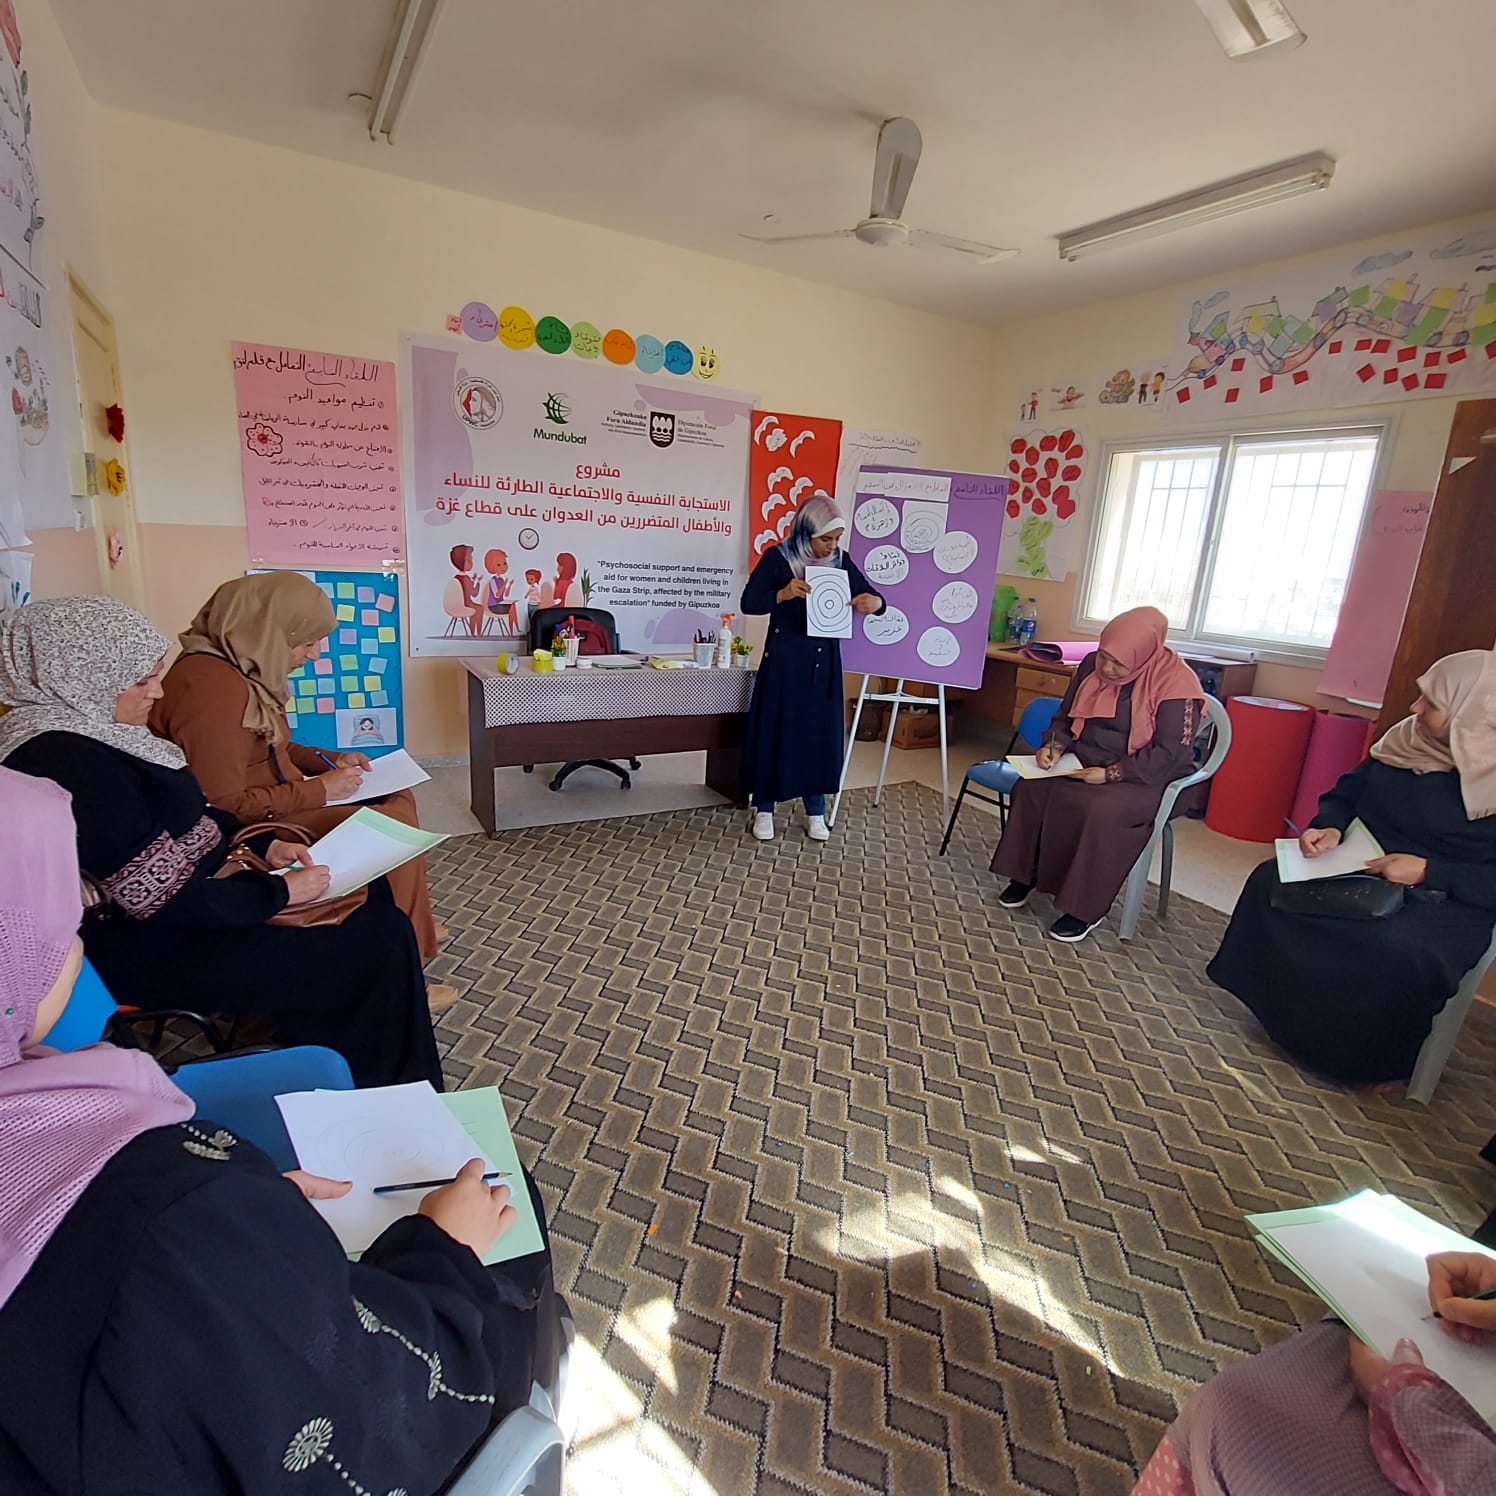 اتحاد لجان المرأة الفلسطينية يستمر في تنفيذ جلسات الدعم النفسي والاجتماعي في مدينة بيت حانون